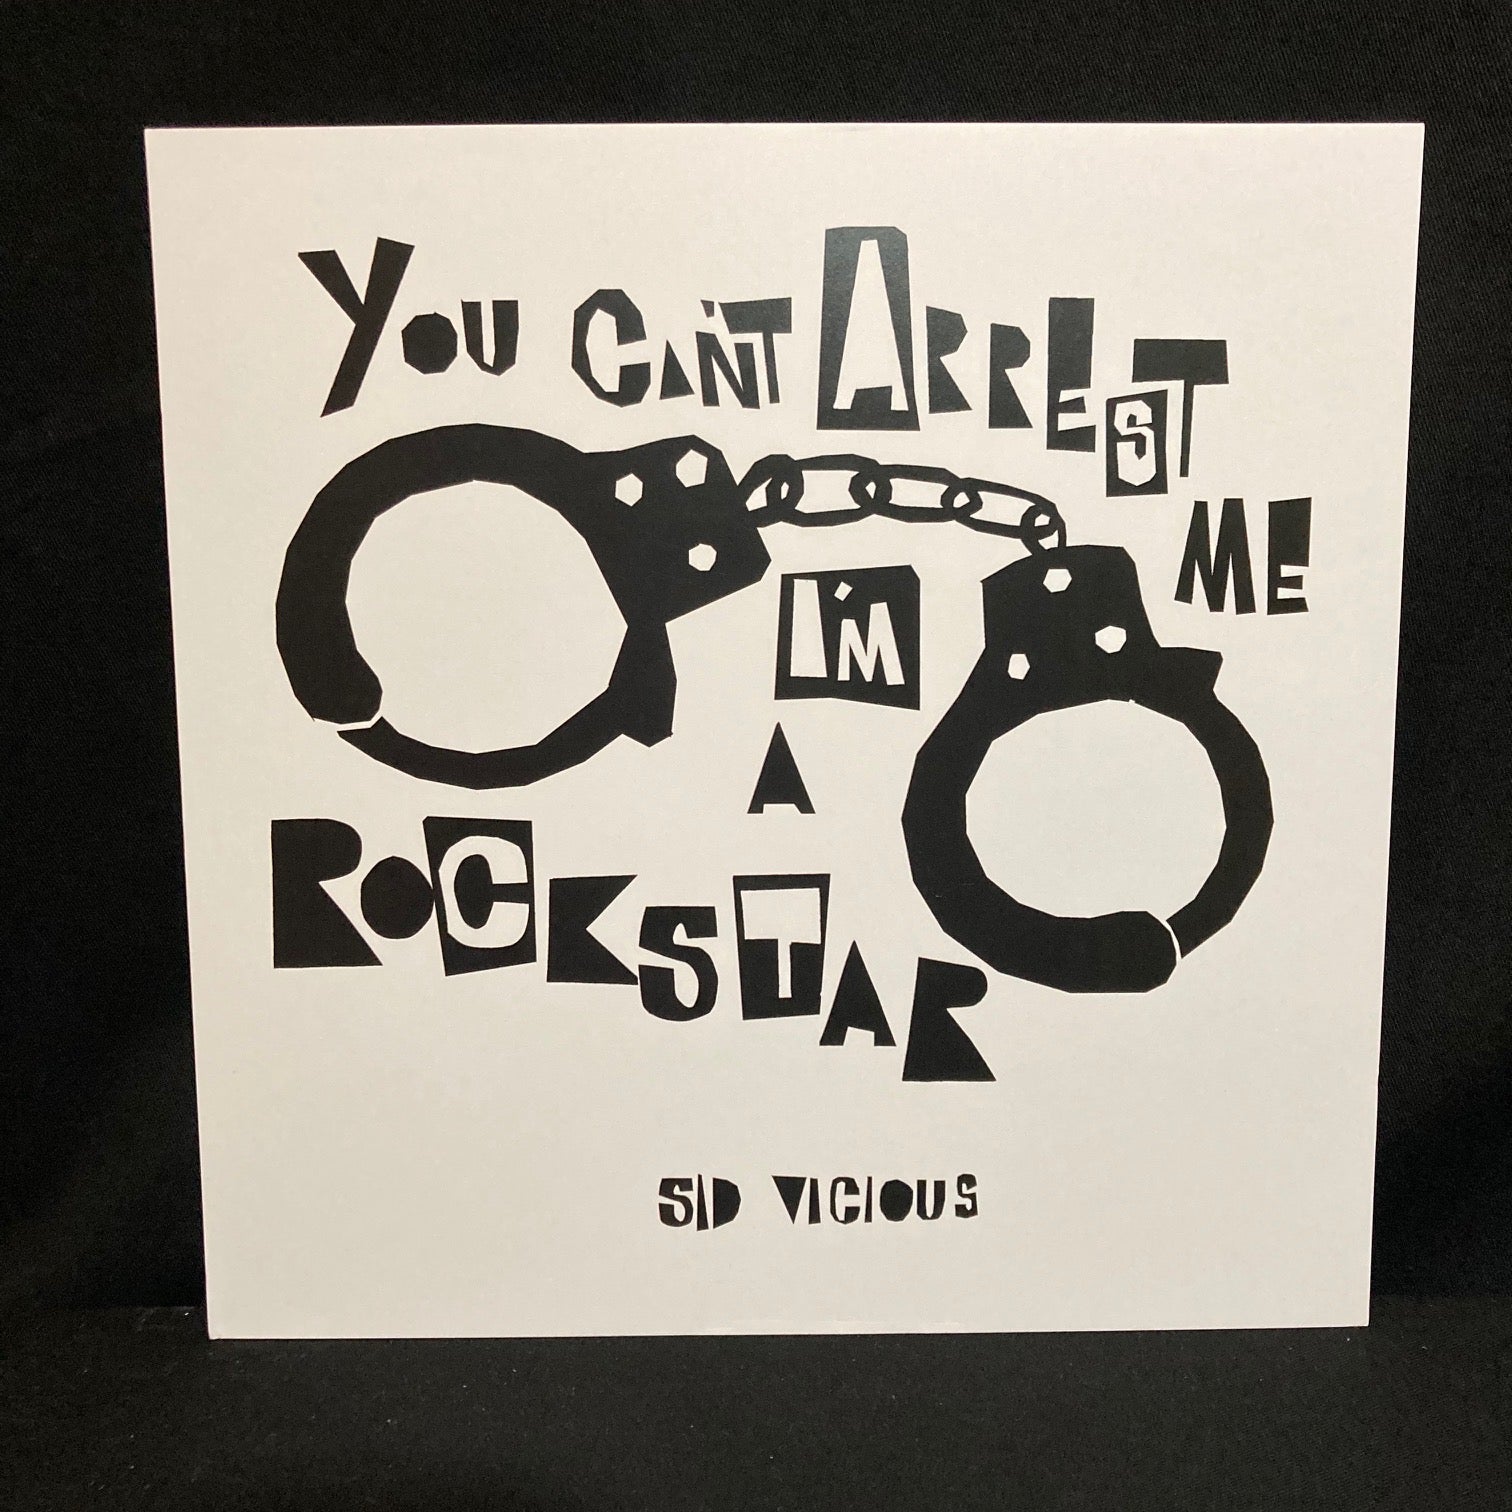 'You Can't Arrest Me, I'm A RockStar' Art Print